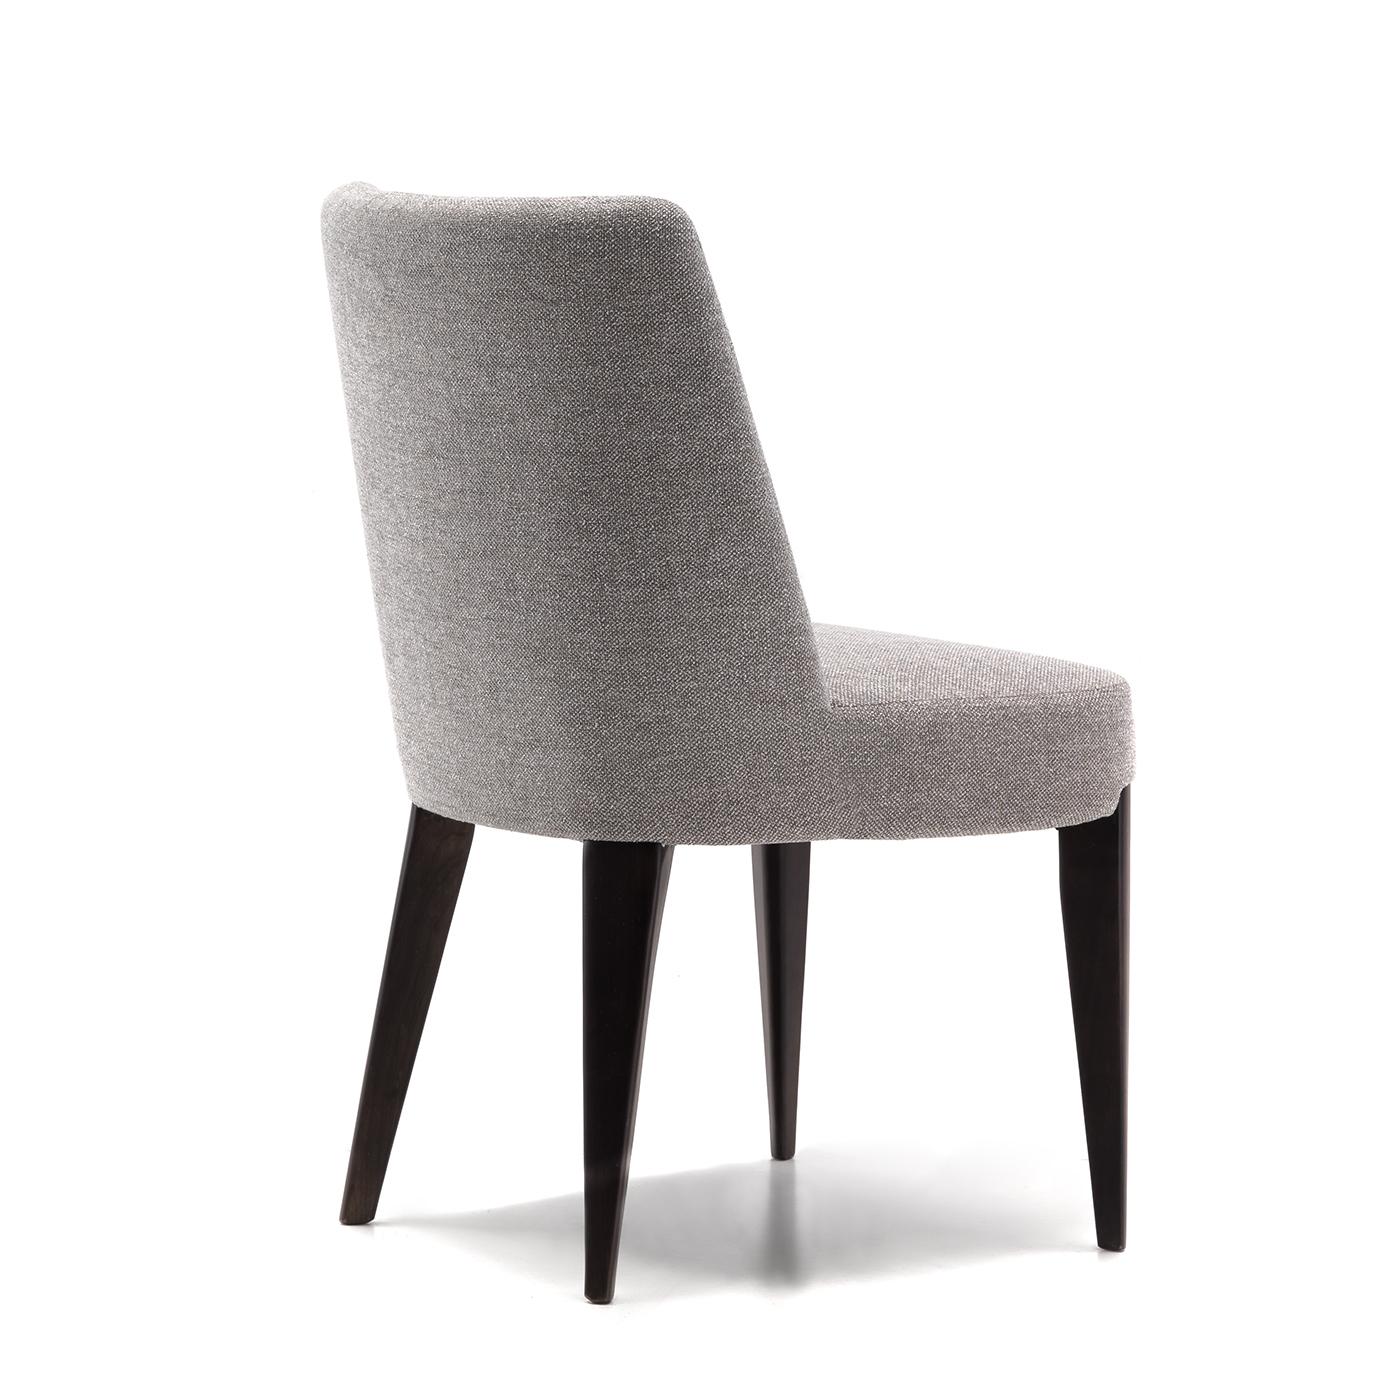 Cette chaise exquise de Giovanna Azzarello, dont la structure robuste en cerisier massif est recouverte d'une finition satinée en ébène, se caractérise par un style polyvalent et épuré. Le choix idéal pour compléter les tables modernes avec une